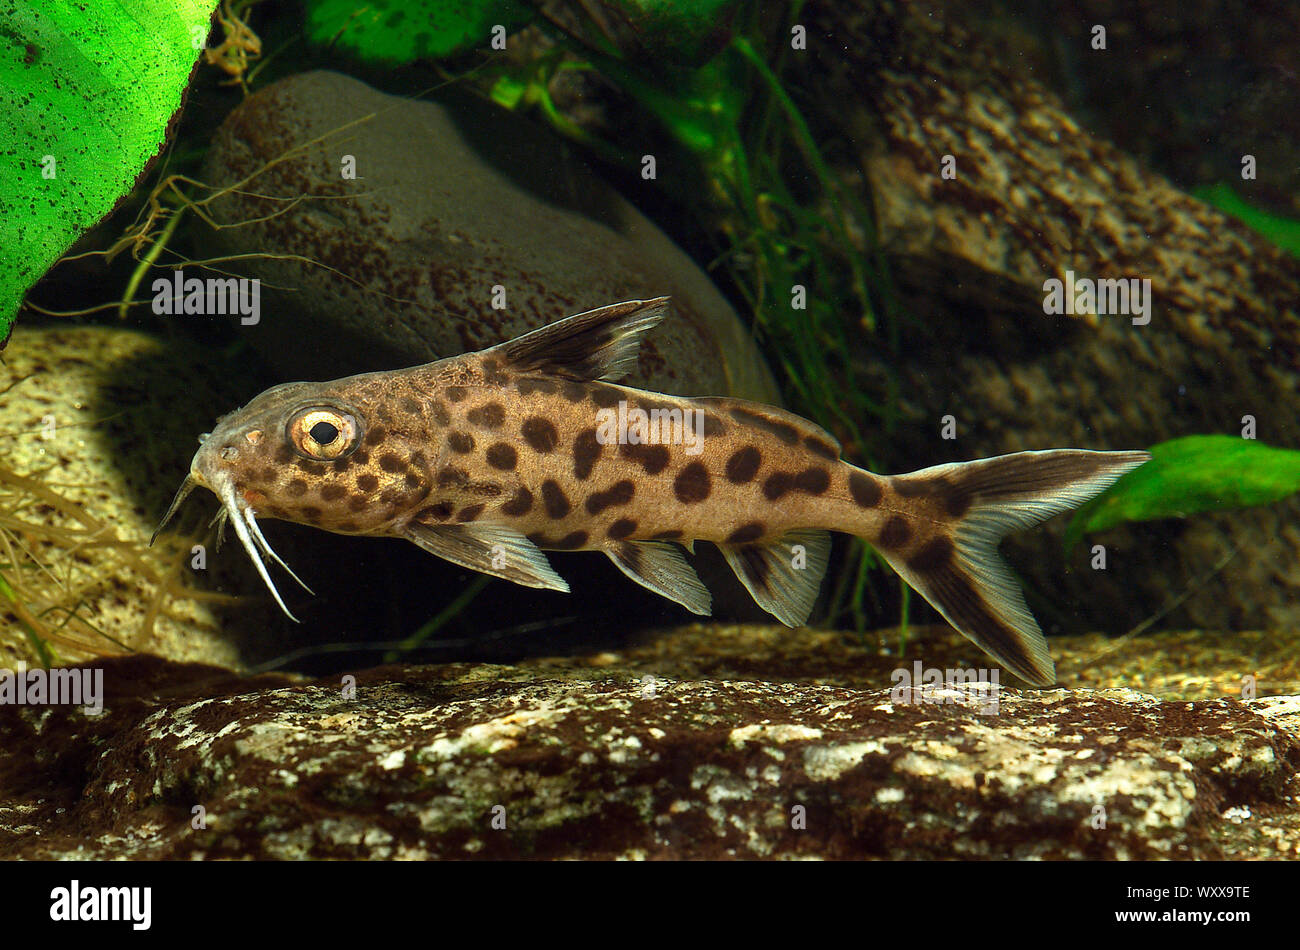 Cuckoo catfish (Synodontis multipunctatus) in aquarium Stock Photo